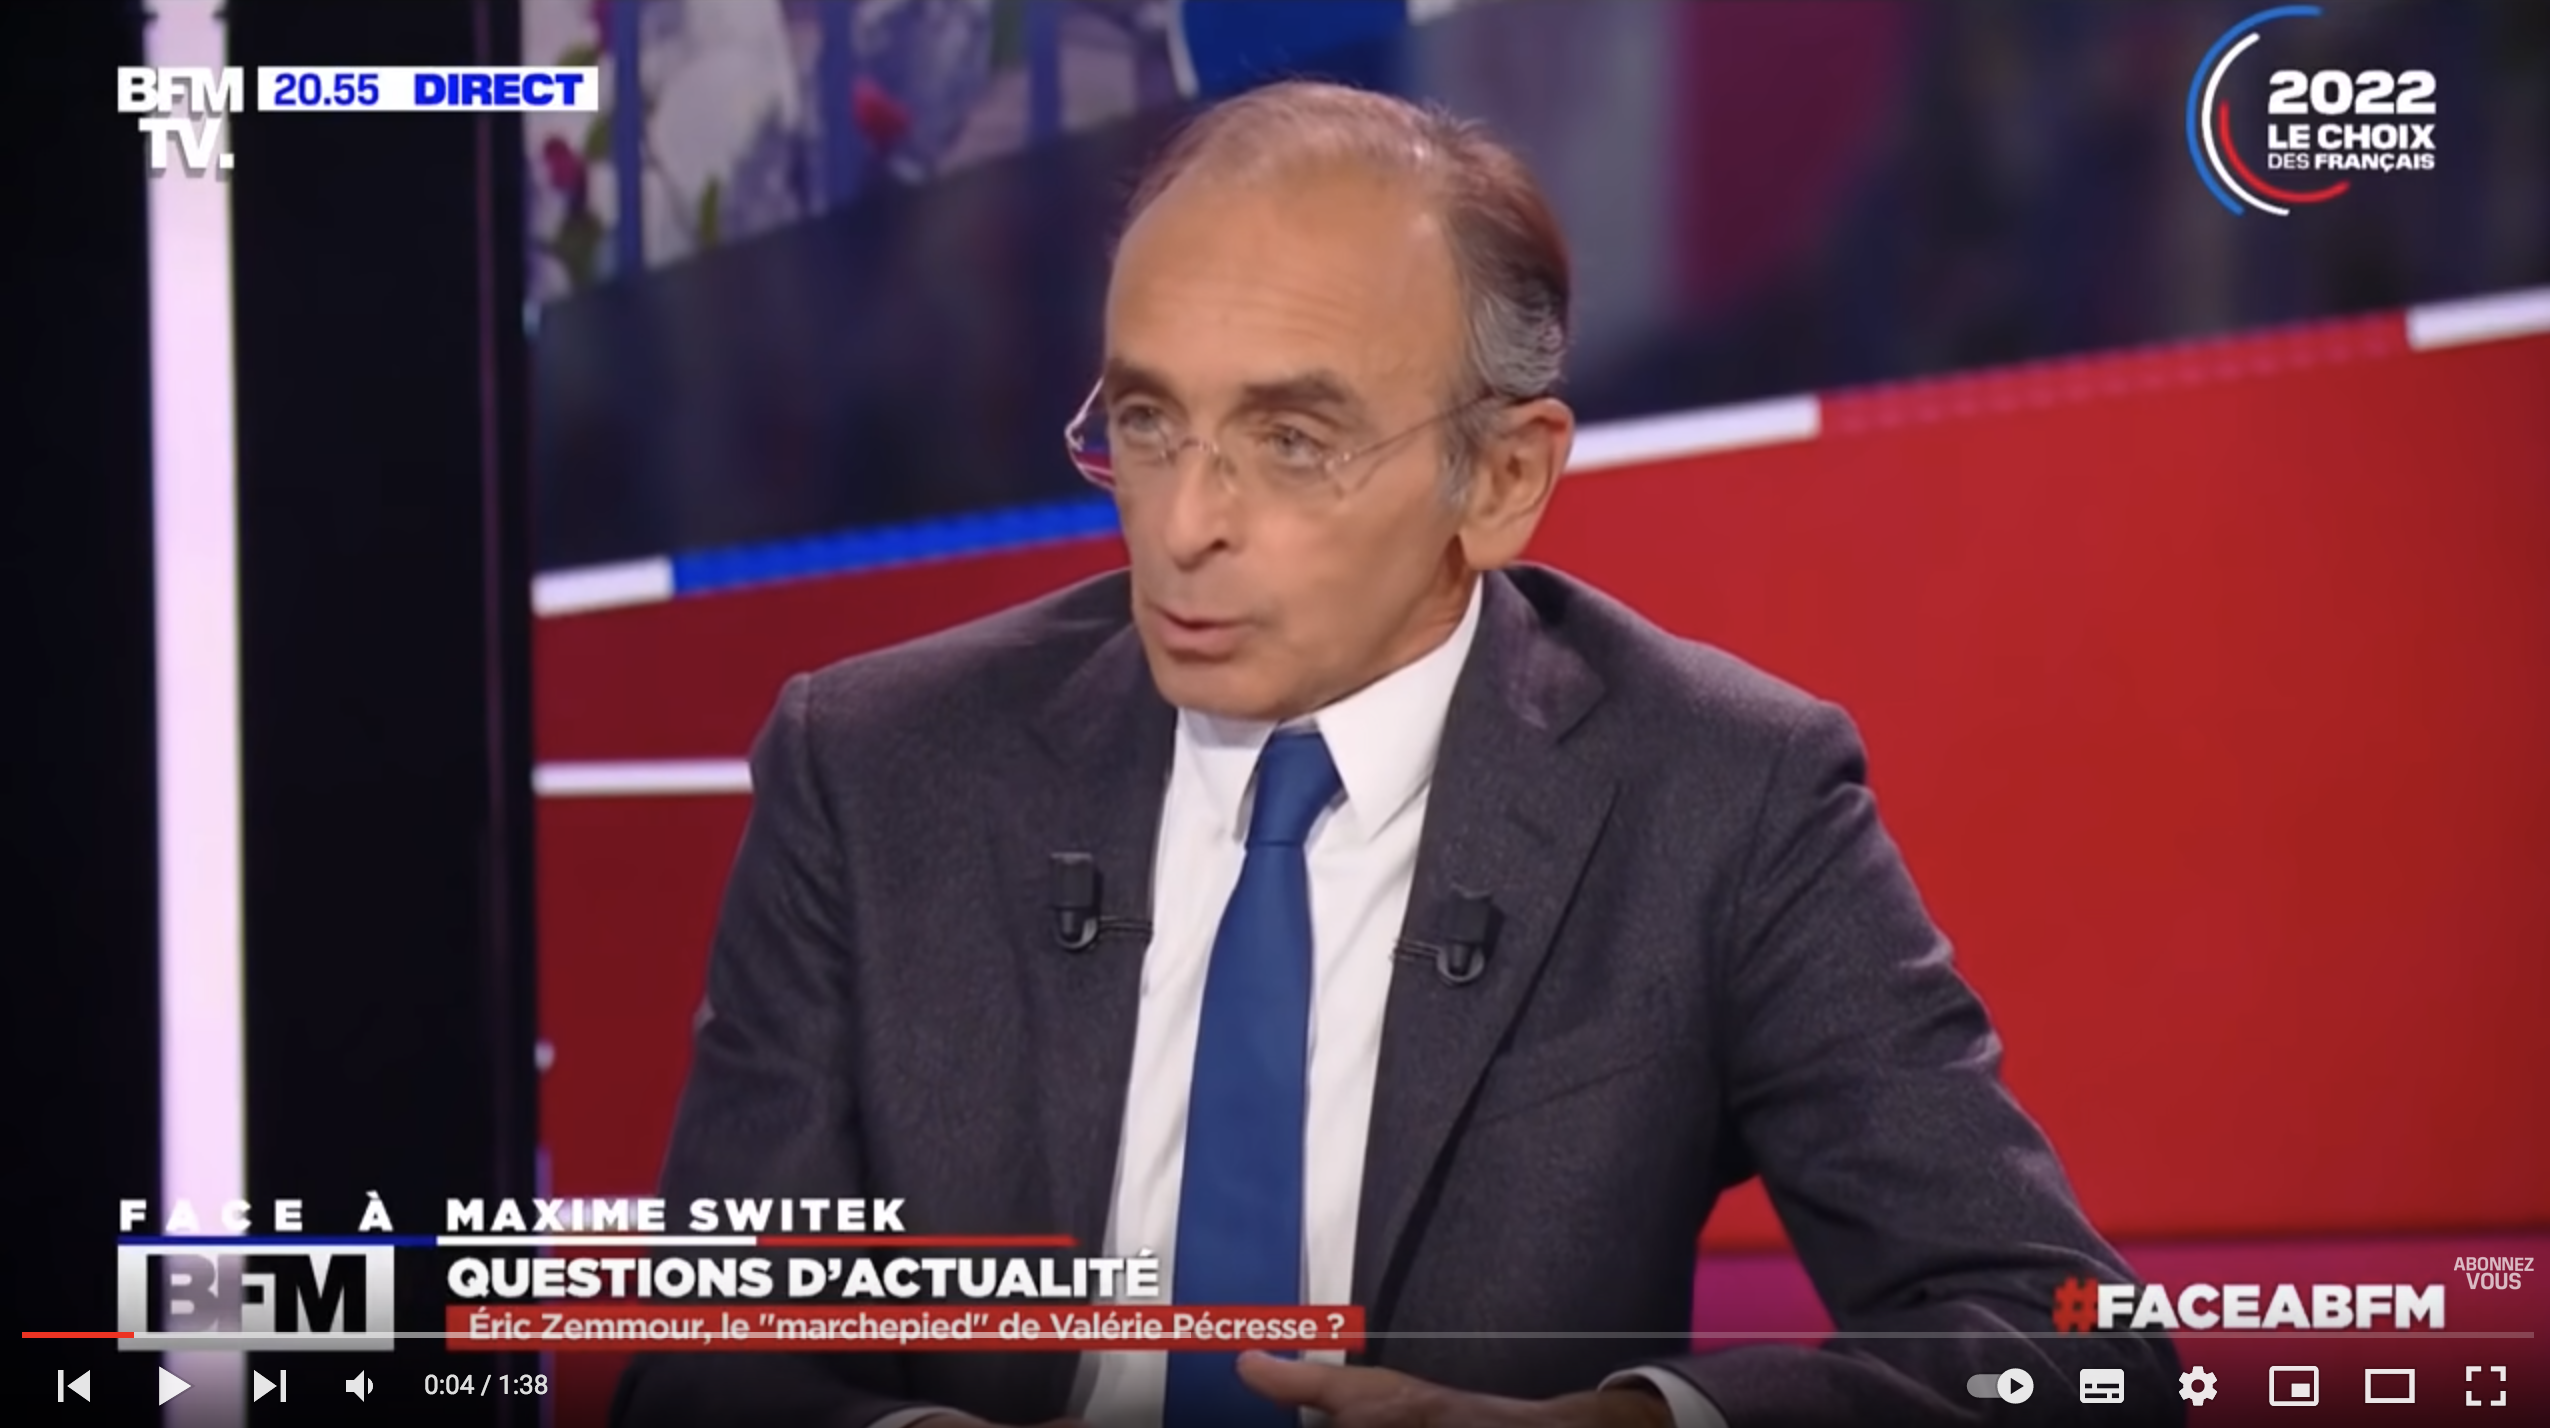 Éric Zemmour : “C’est à cause de Le Pen et son débat calamiteux que nous avons eu Macron” (VIDÉO)